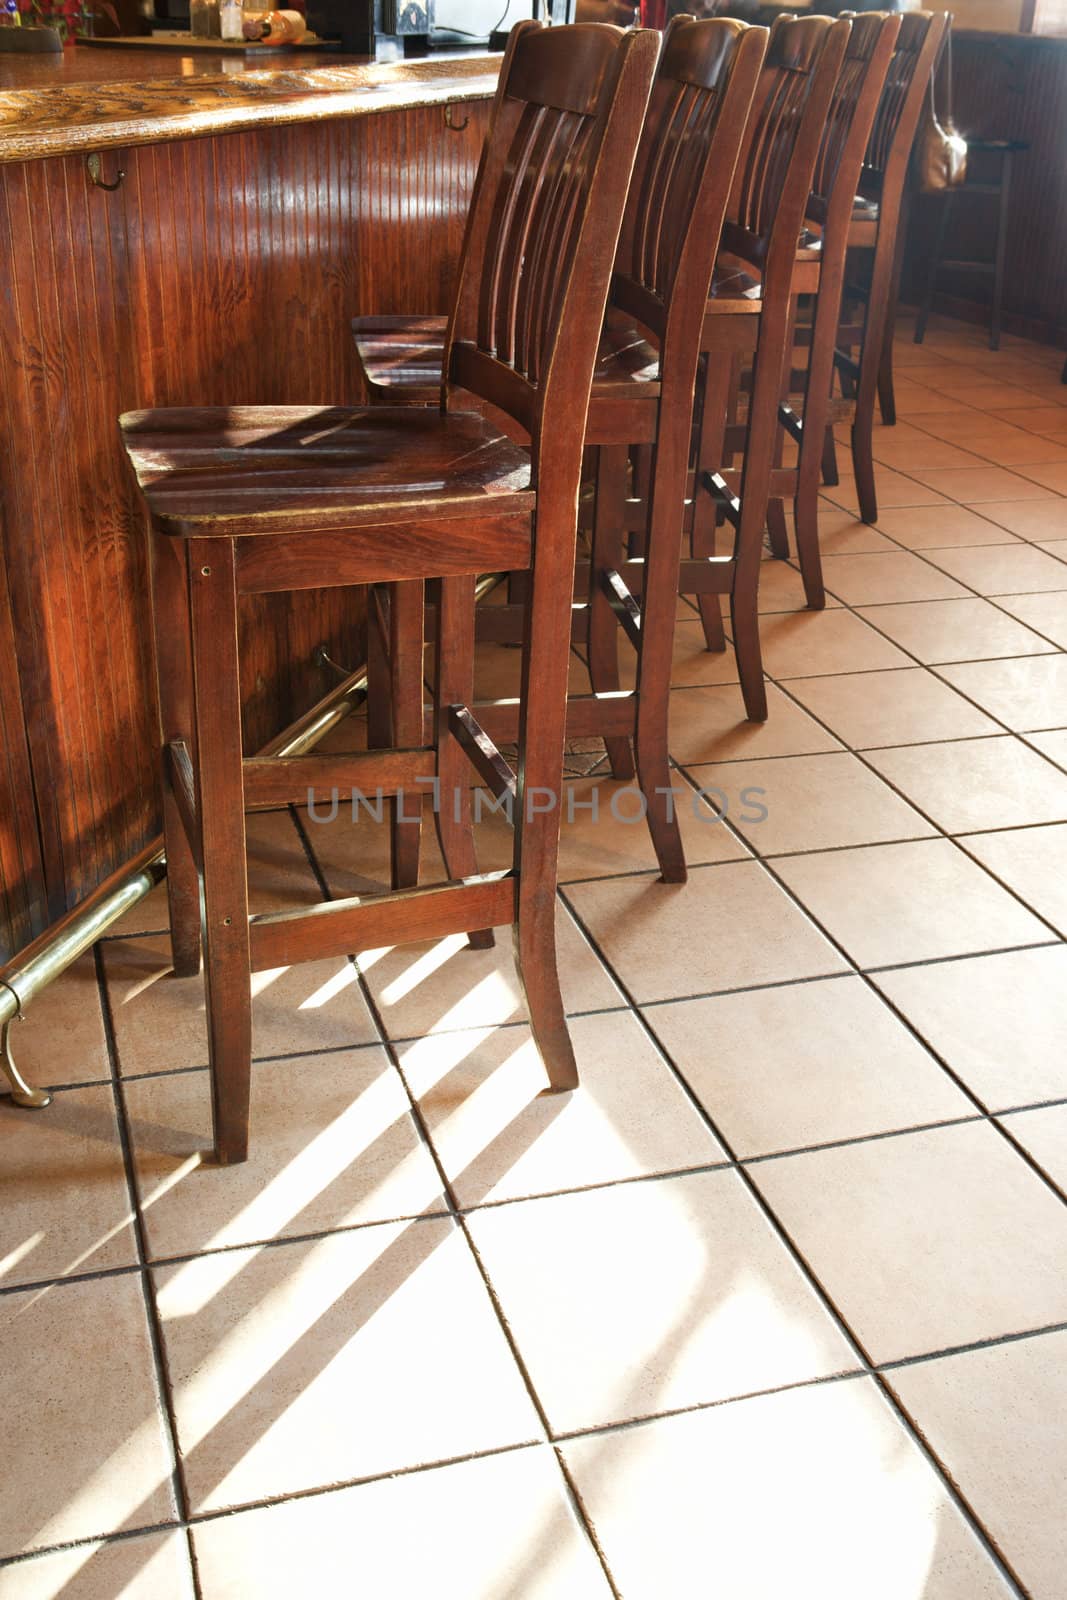 Bar stools at bar. by iofoto